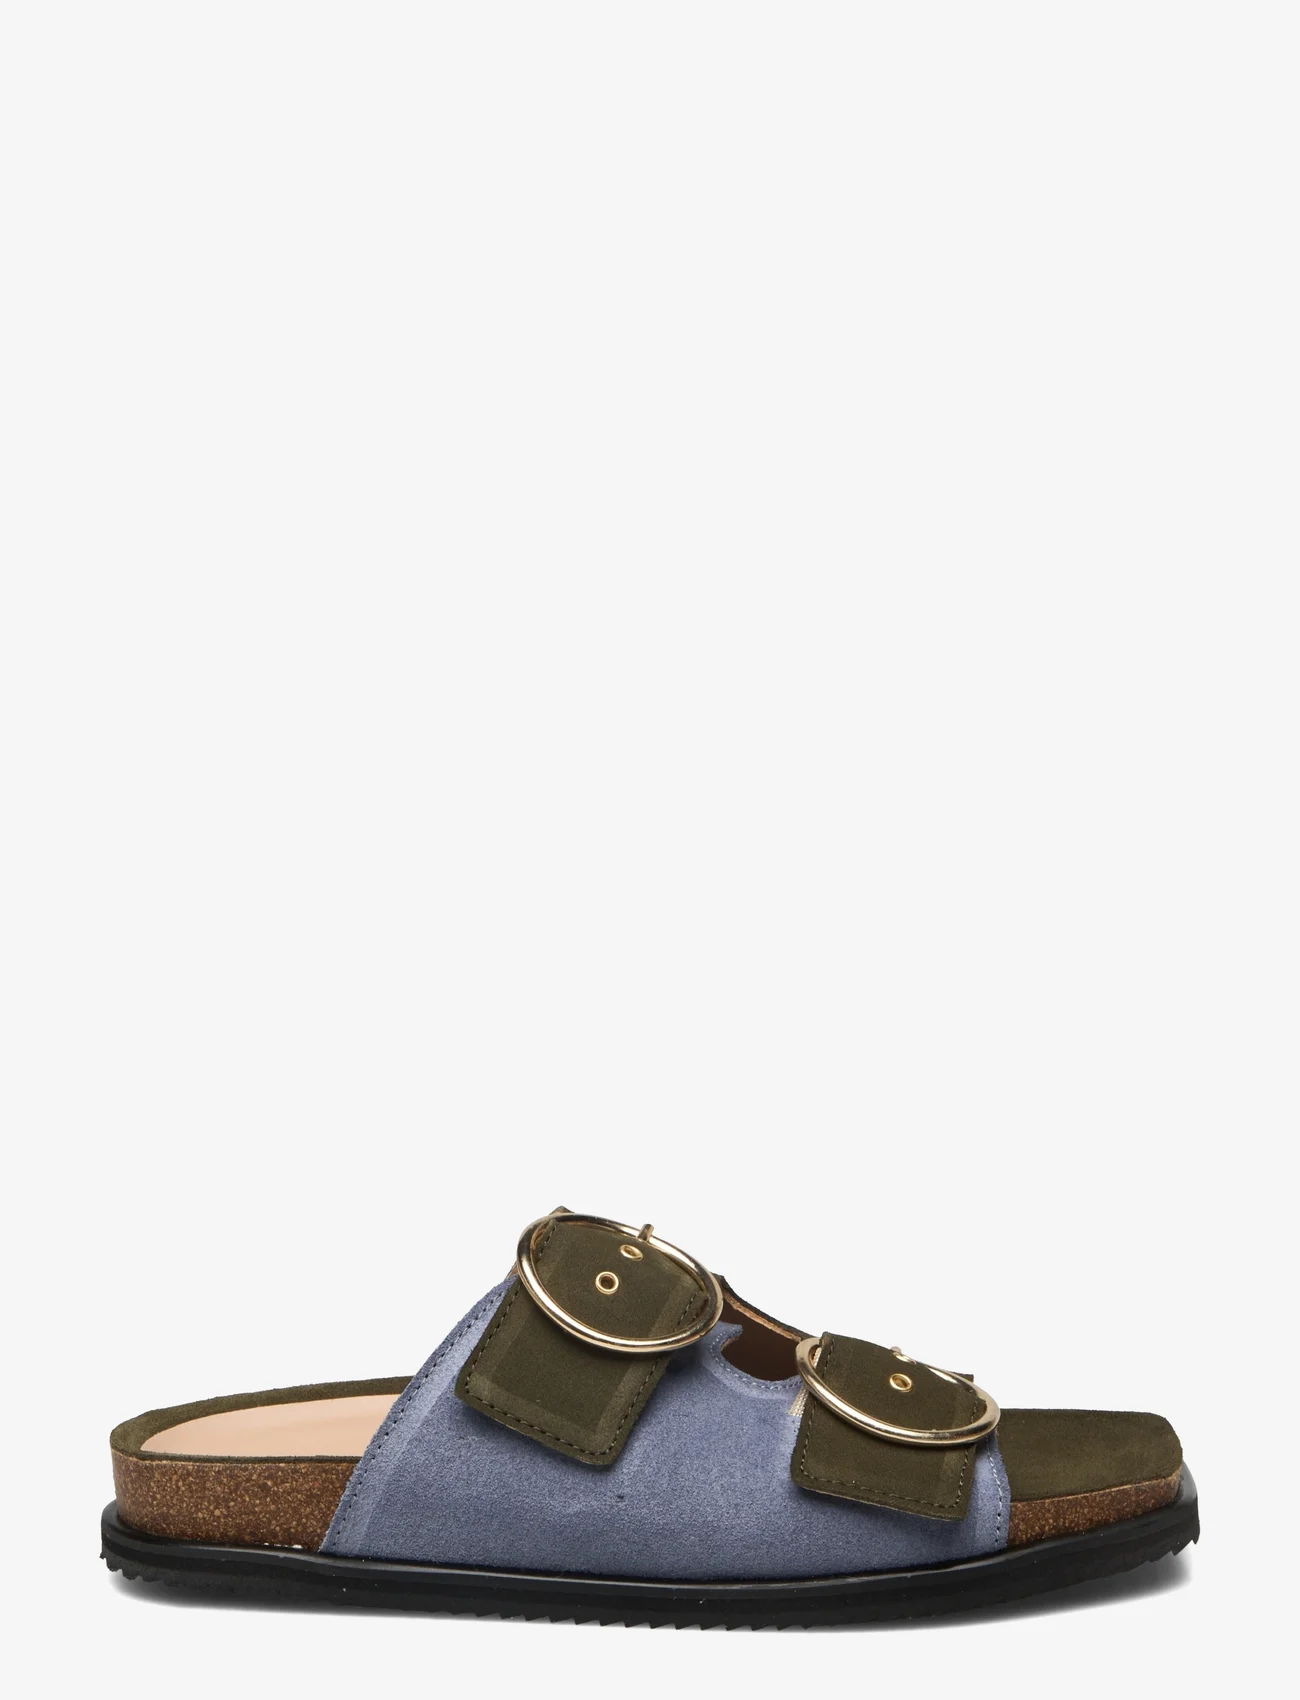 ANGULUS - Sandals - flat - open toe - op - flade sandaler - 2244/2242 light blue/green - 1